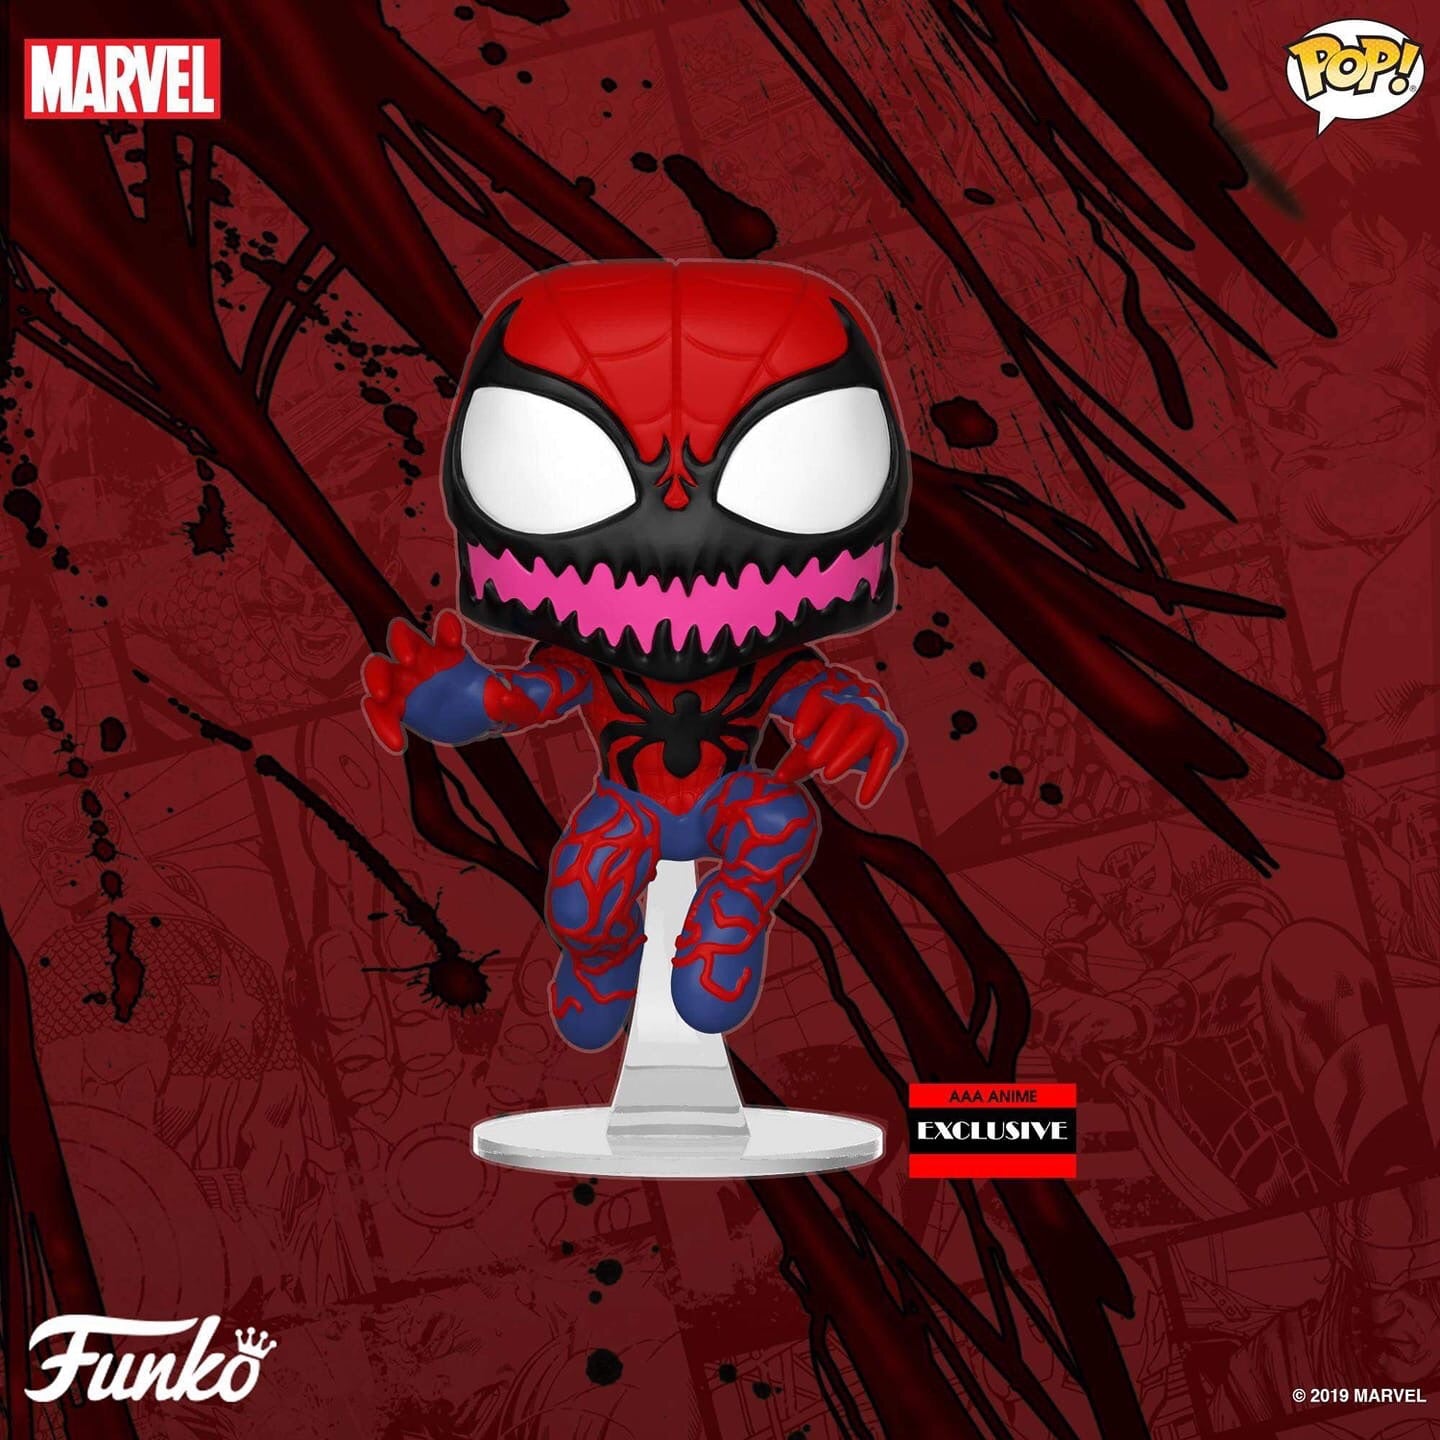 Spider-carnage AAA Exclusive Funko Pop! Vinyl Figure